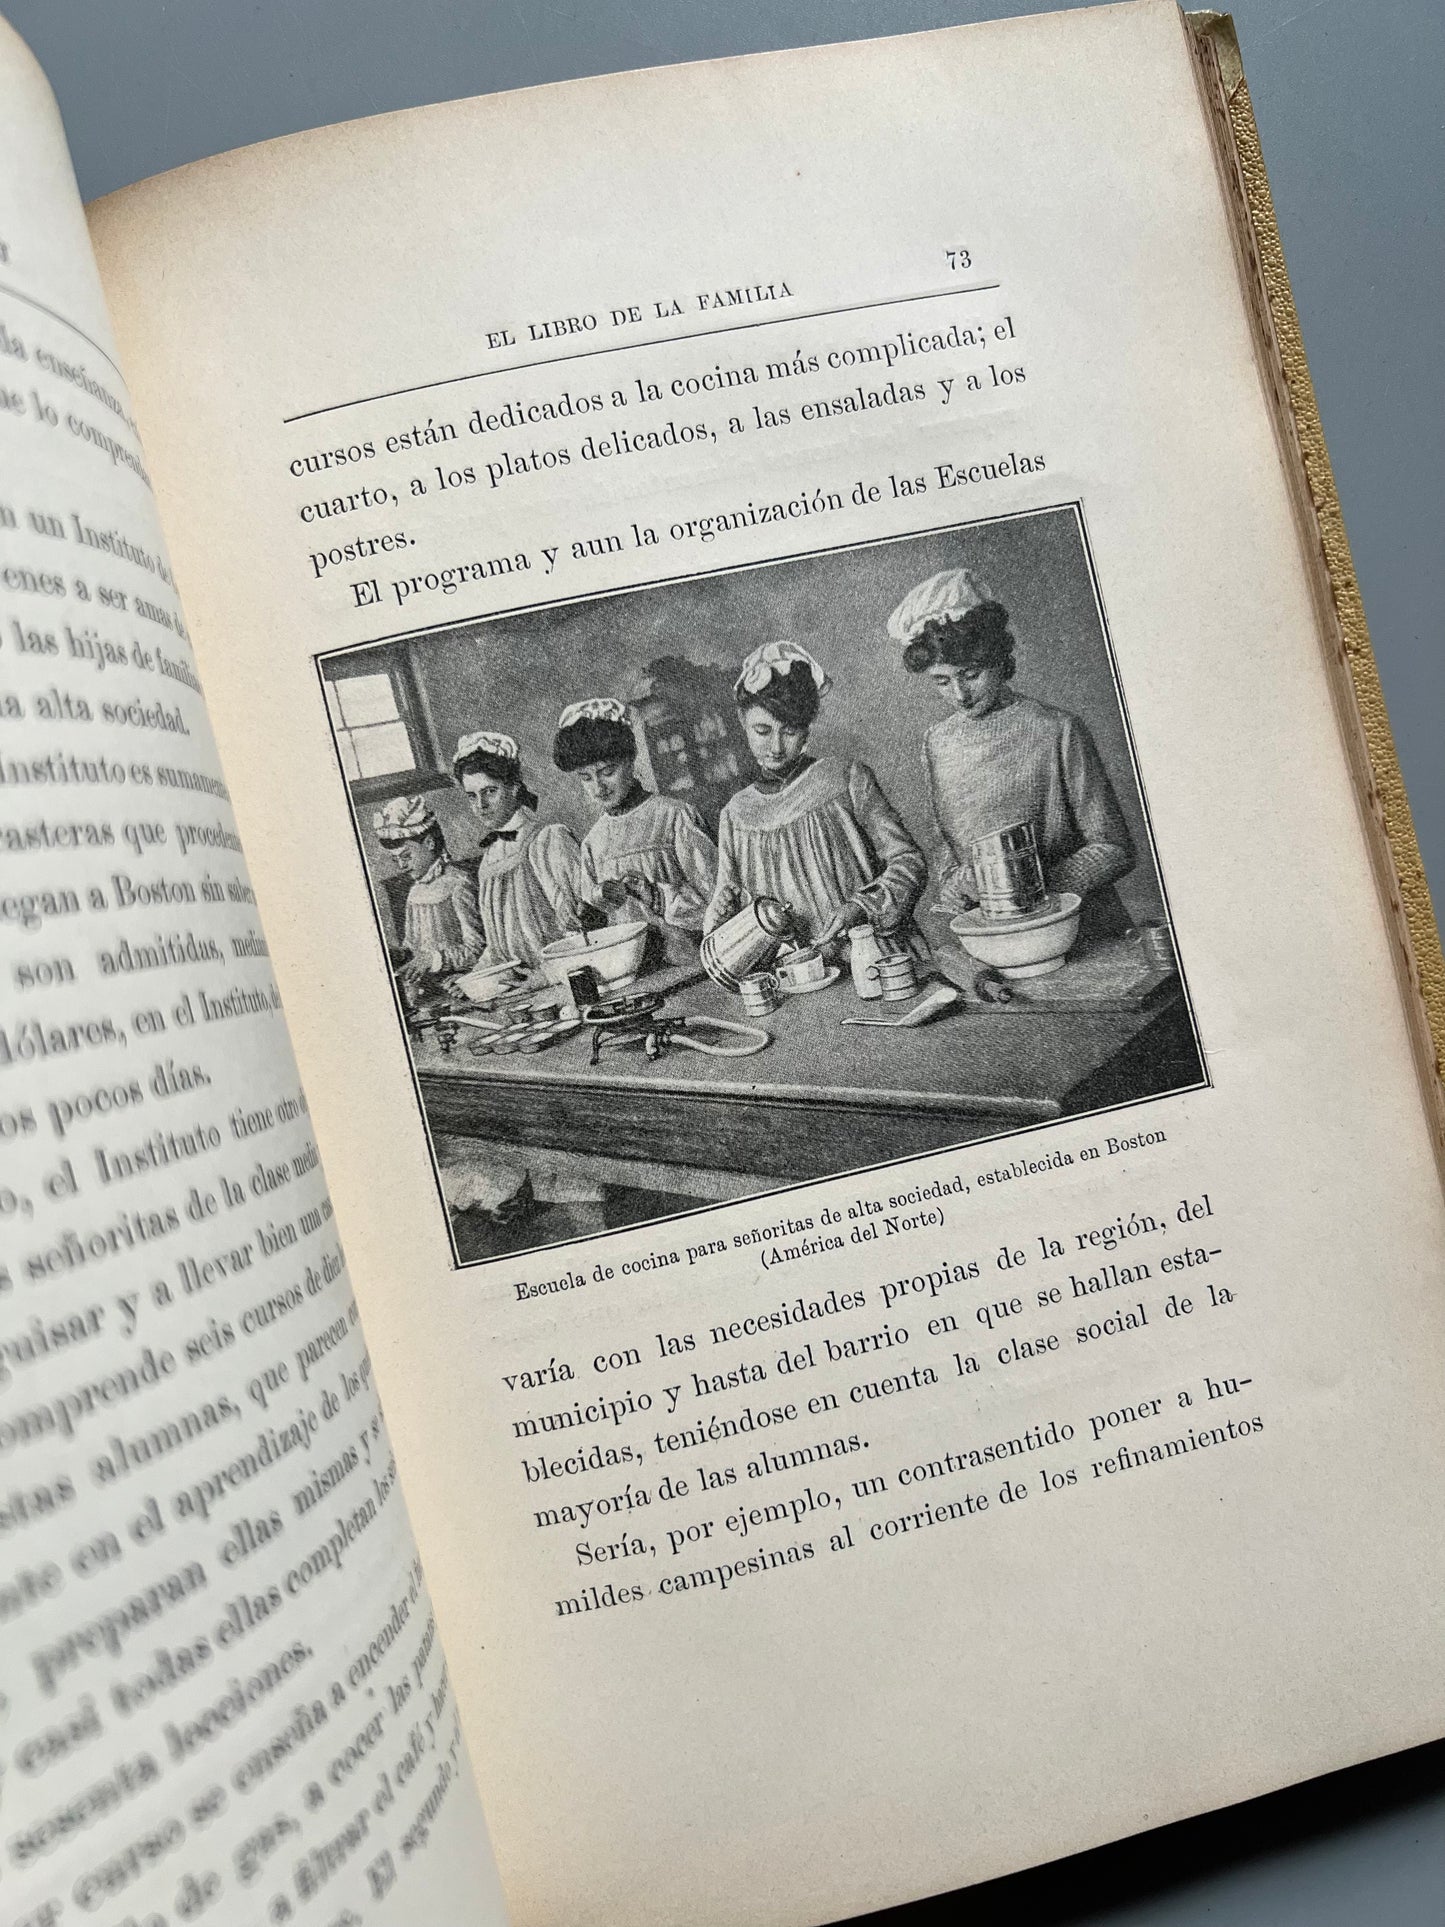 El libro de la familia, Juan Bautista Enseñat - Montaner y Simón, 1915